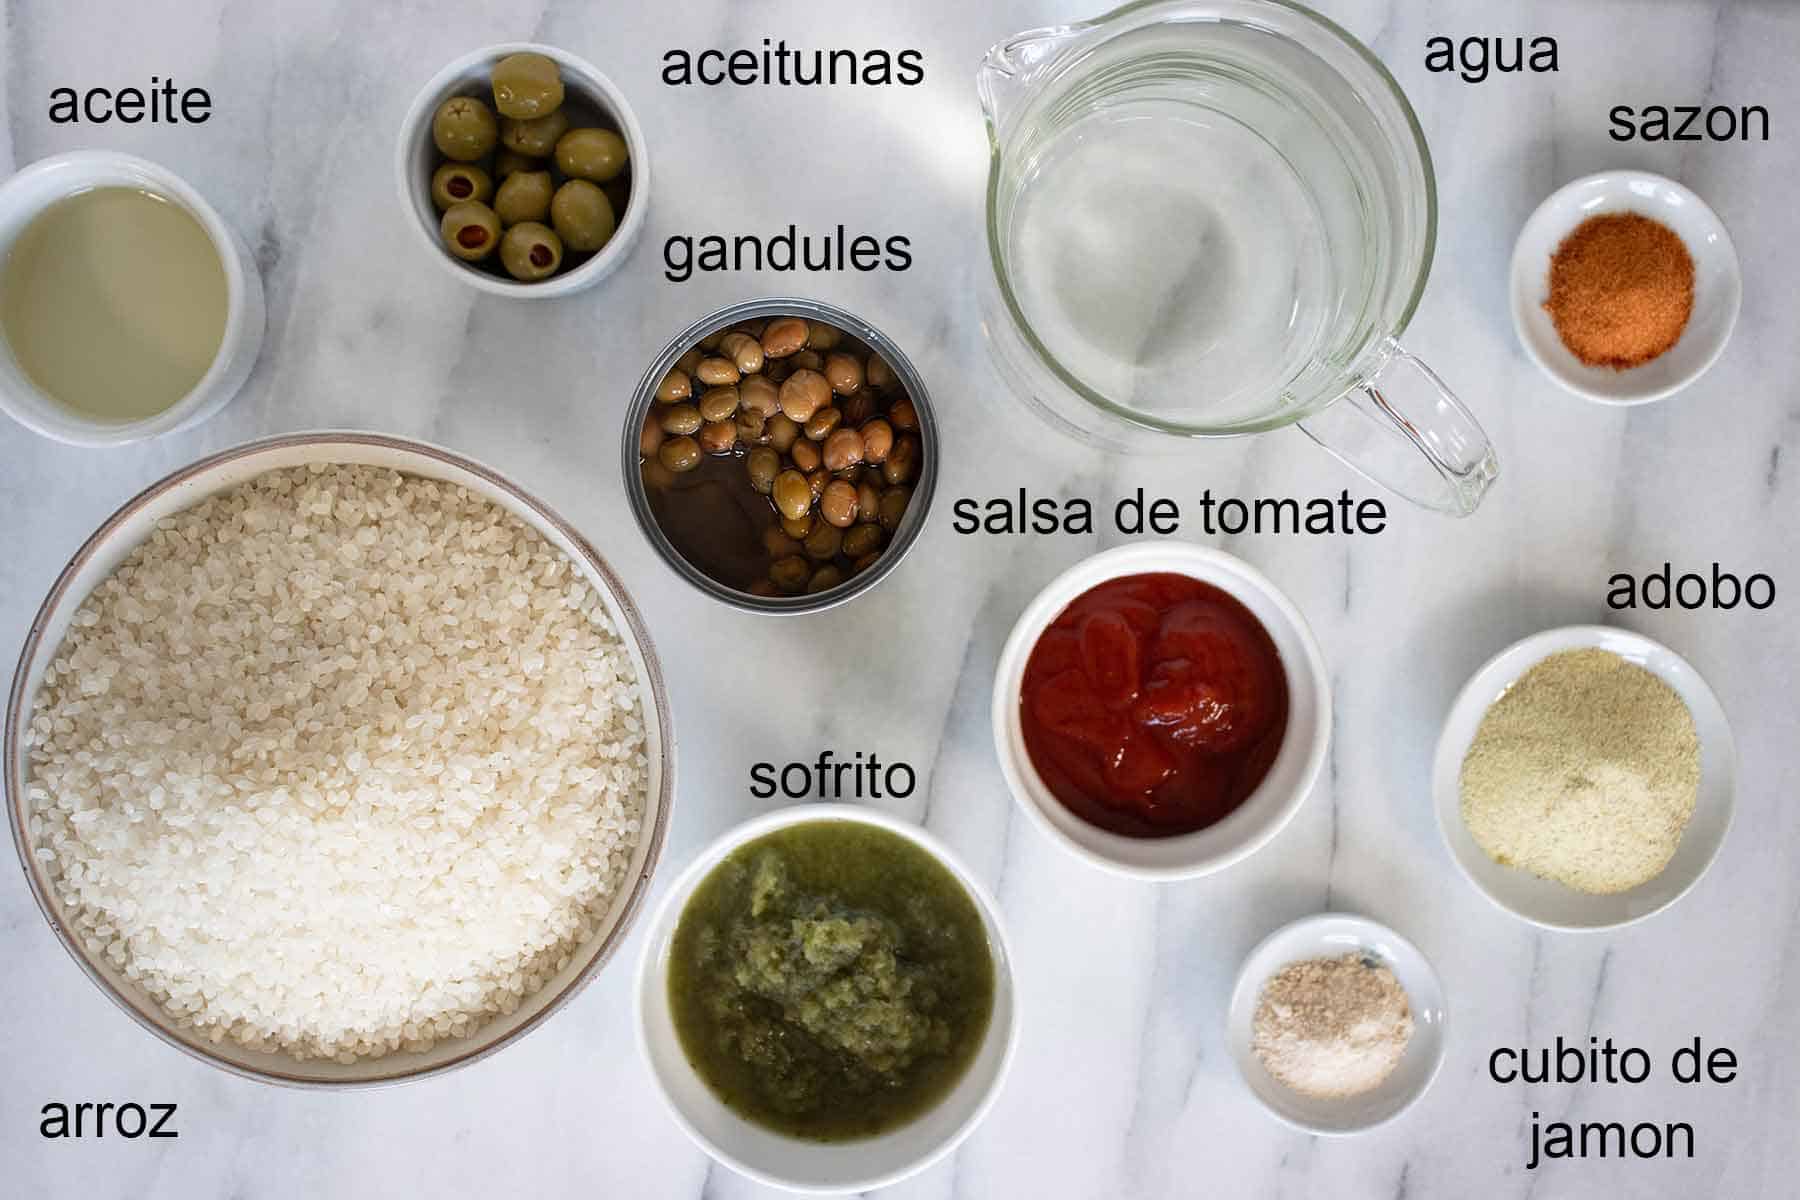 ingredientes para hacer un arroz con gandules al estilo puertorriqueno.